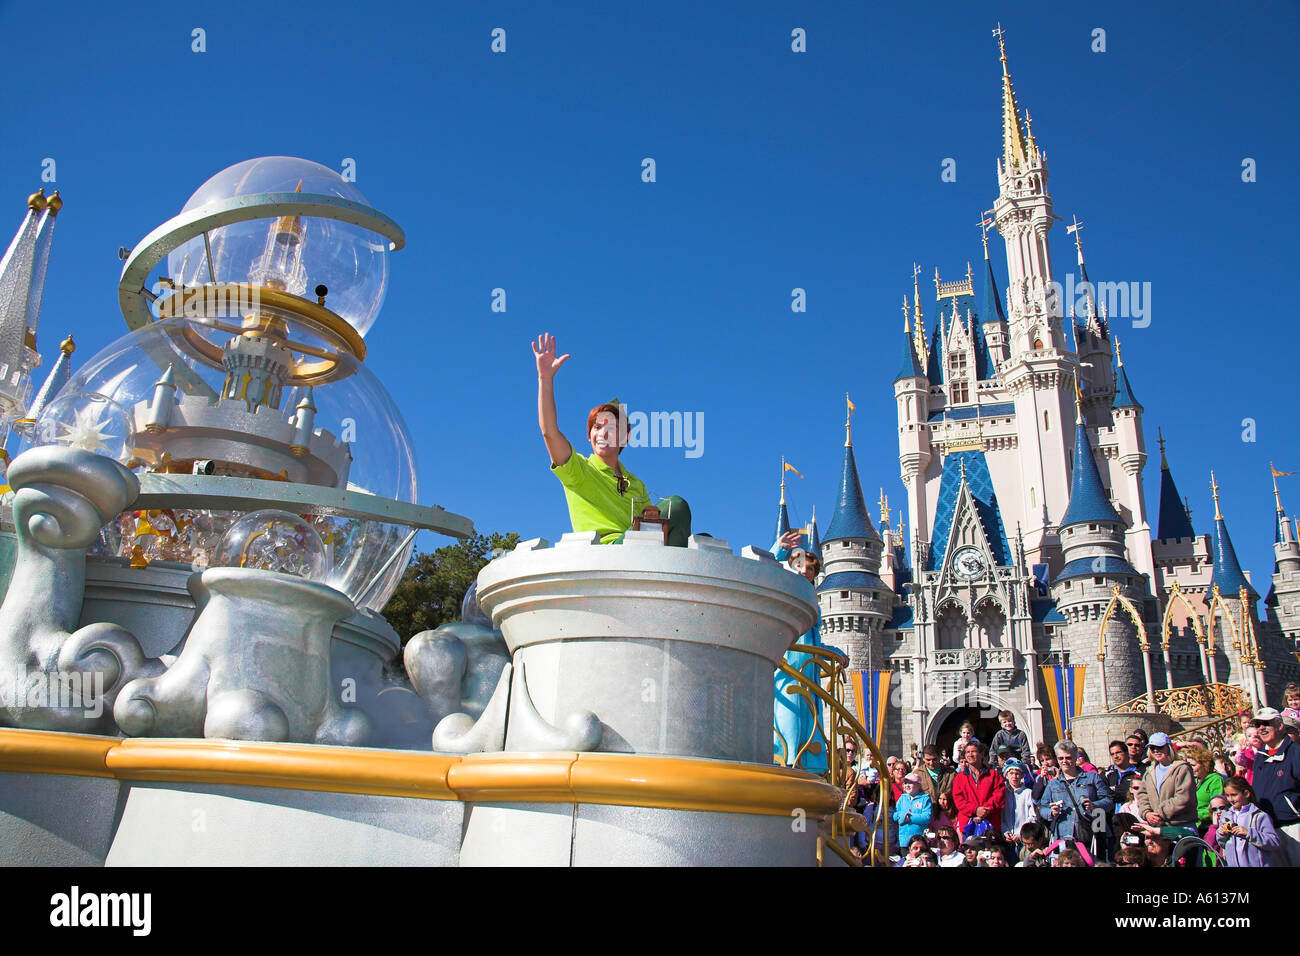 Dreams Come True Disney SVG